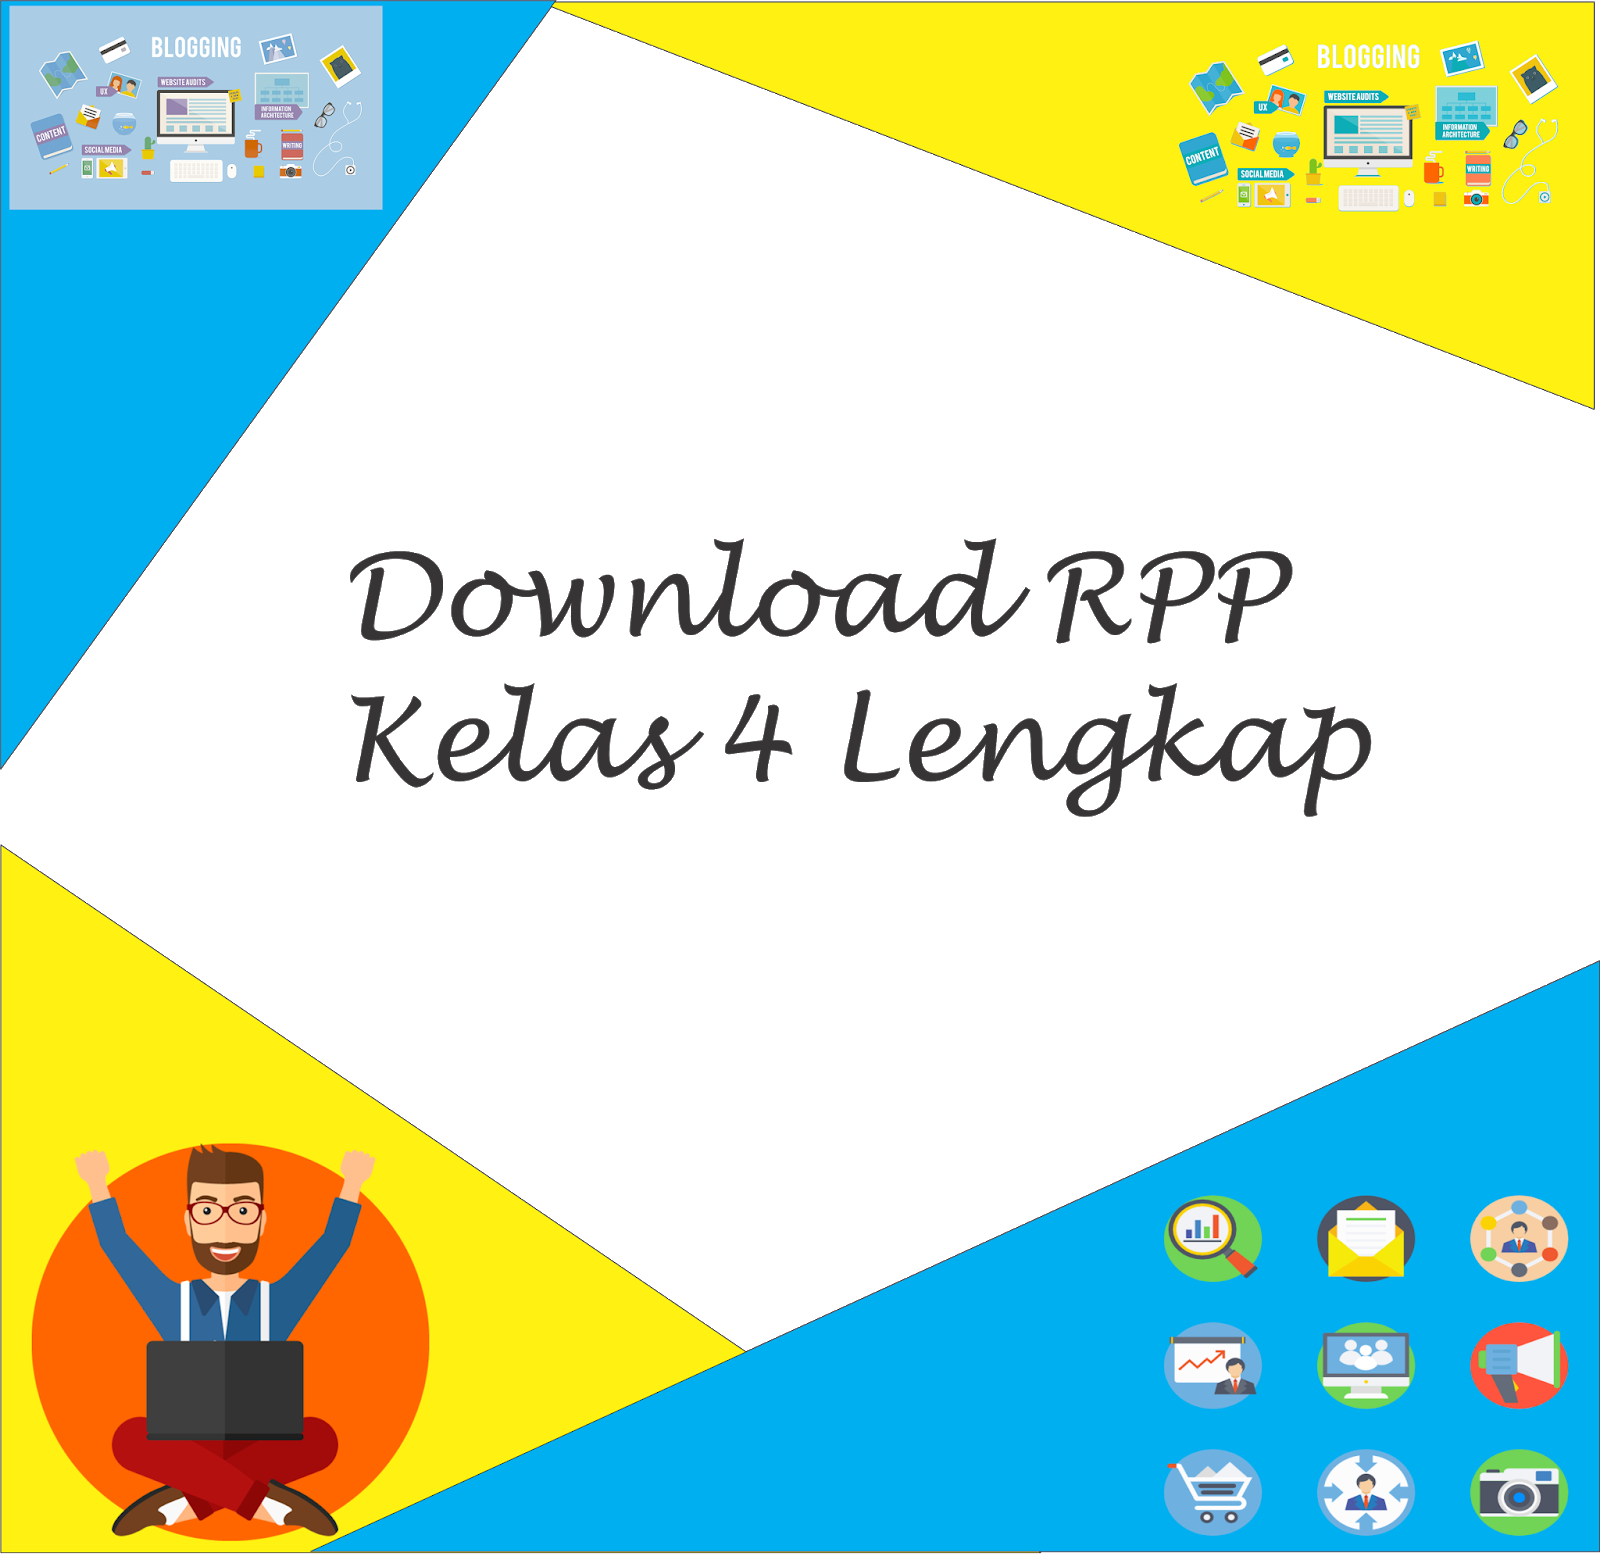 Download RPP Kelas 4 Lengkap